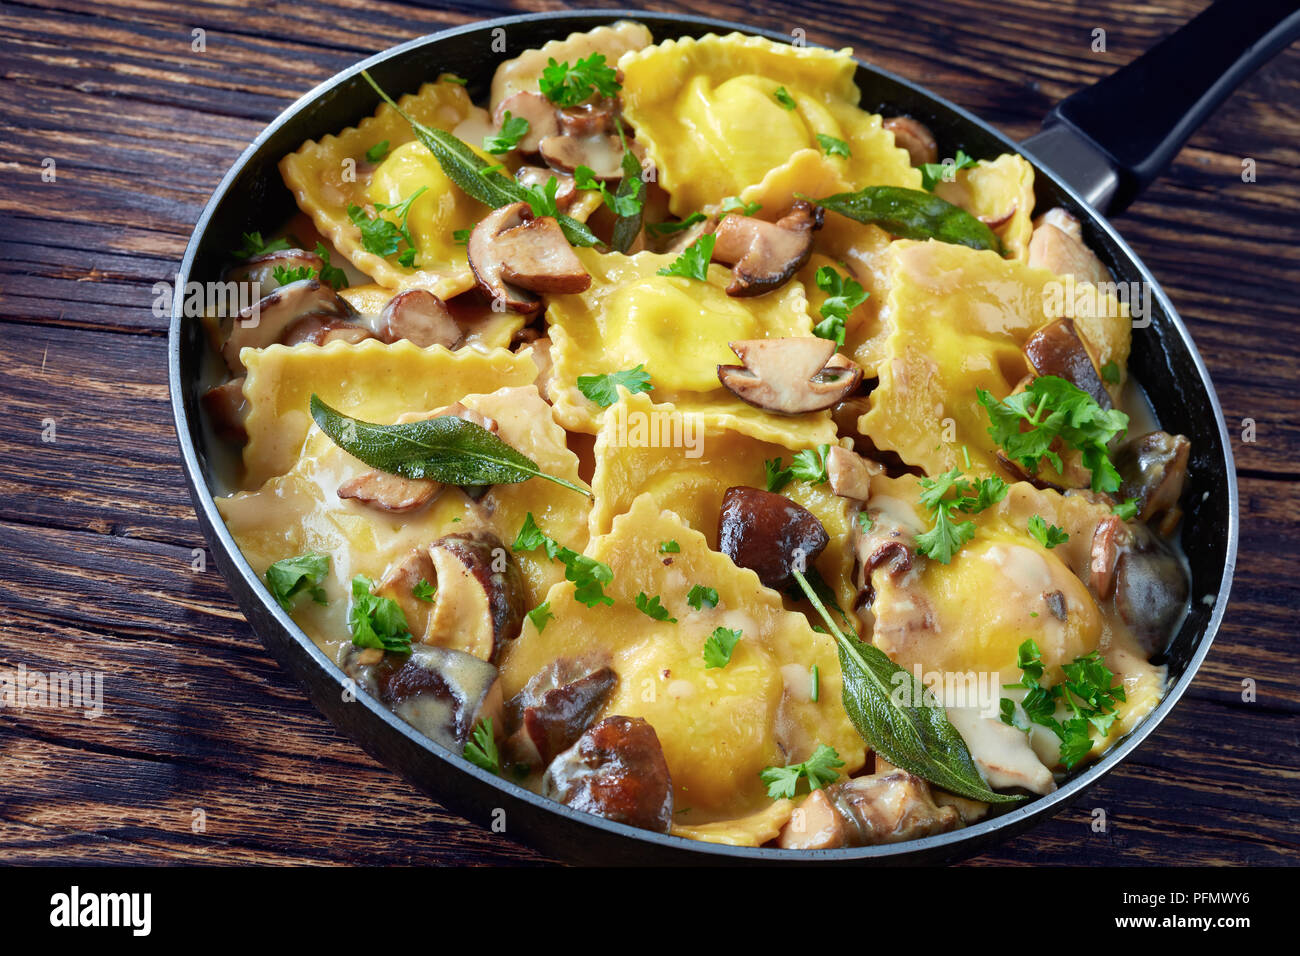 Leckere Ravioli gefüllt mit Ricotta in cremiger Sauce Knoblauch Pilze in einer Pfanne auf einem alten Holztisch gekocht, Ansicht von oben, close-up Stockfoto